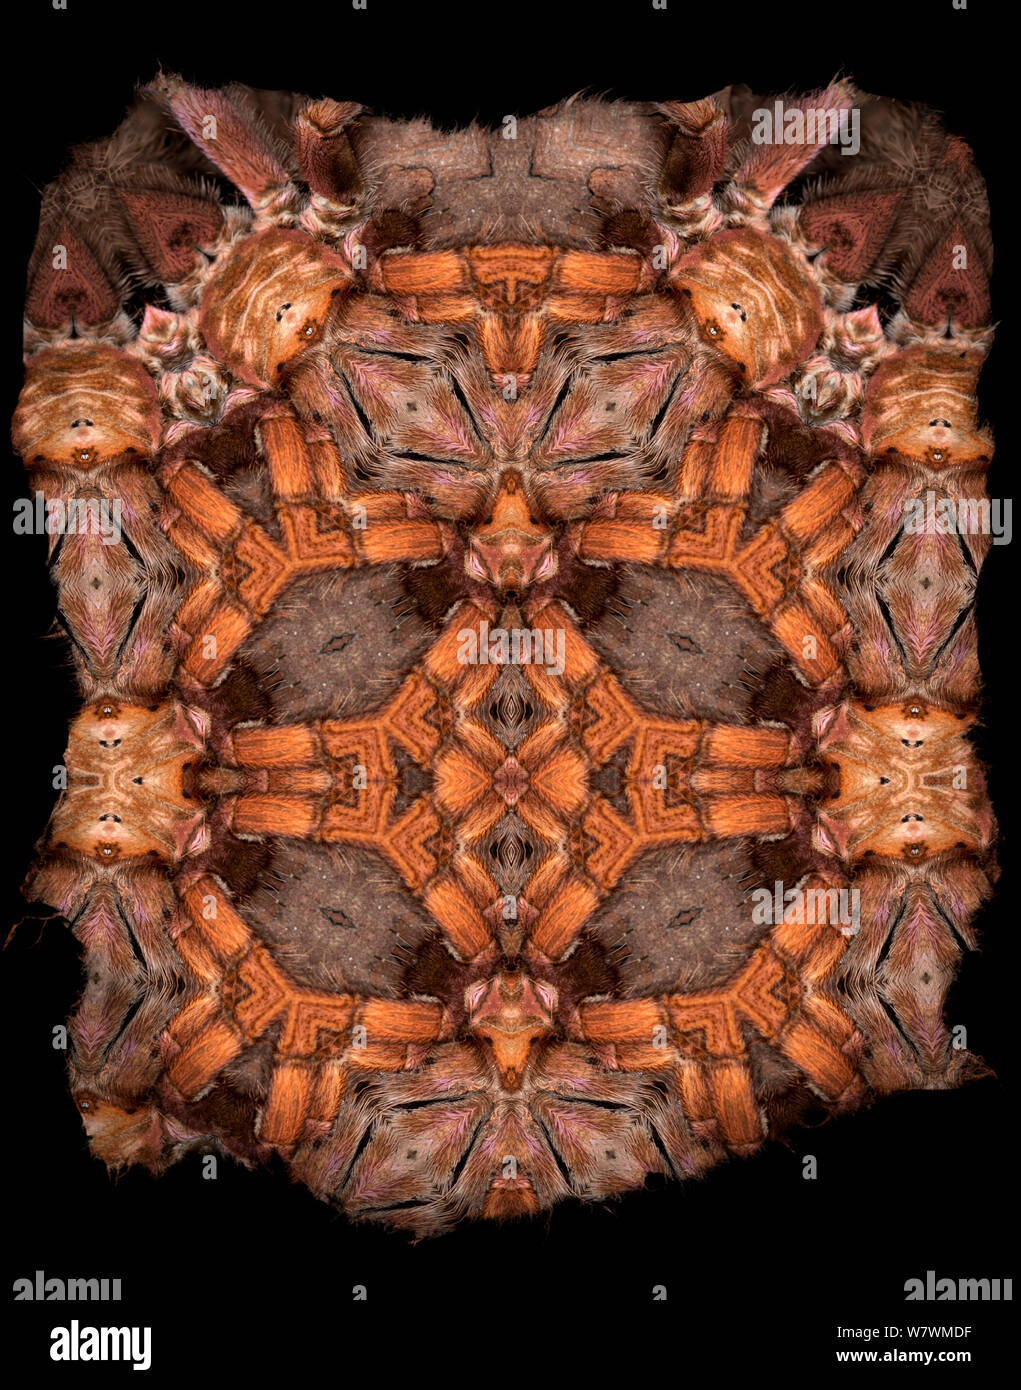 Calidoscopio patrón formado a partir de la imagen de Tarantula restringido para uso editorial hasta diciembre de 2015 Foto de stock